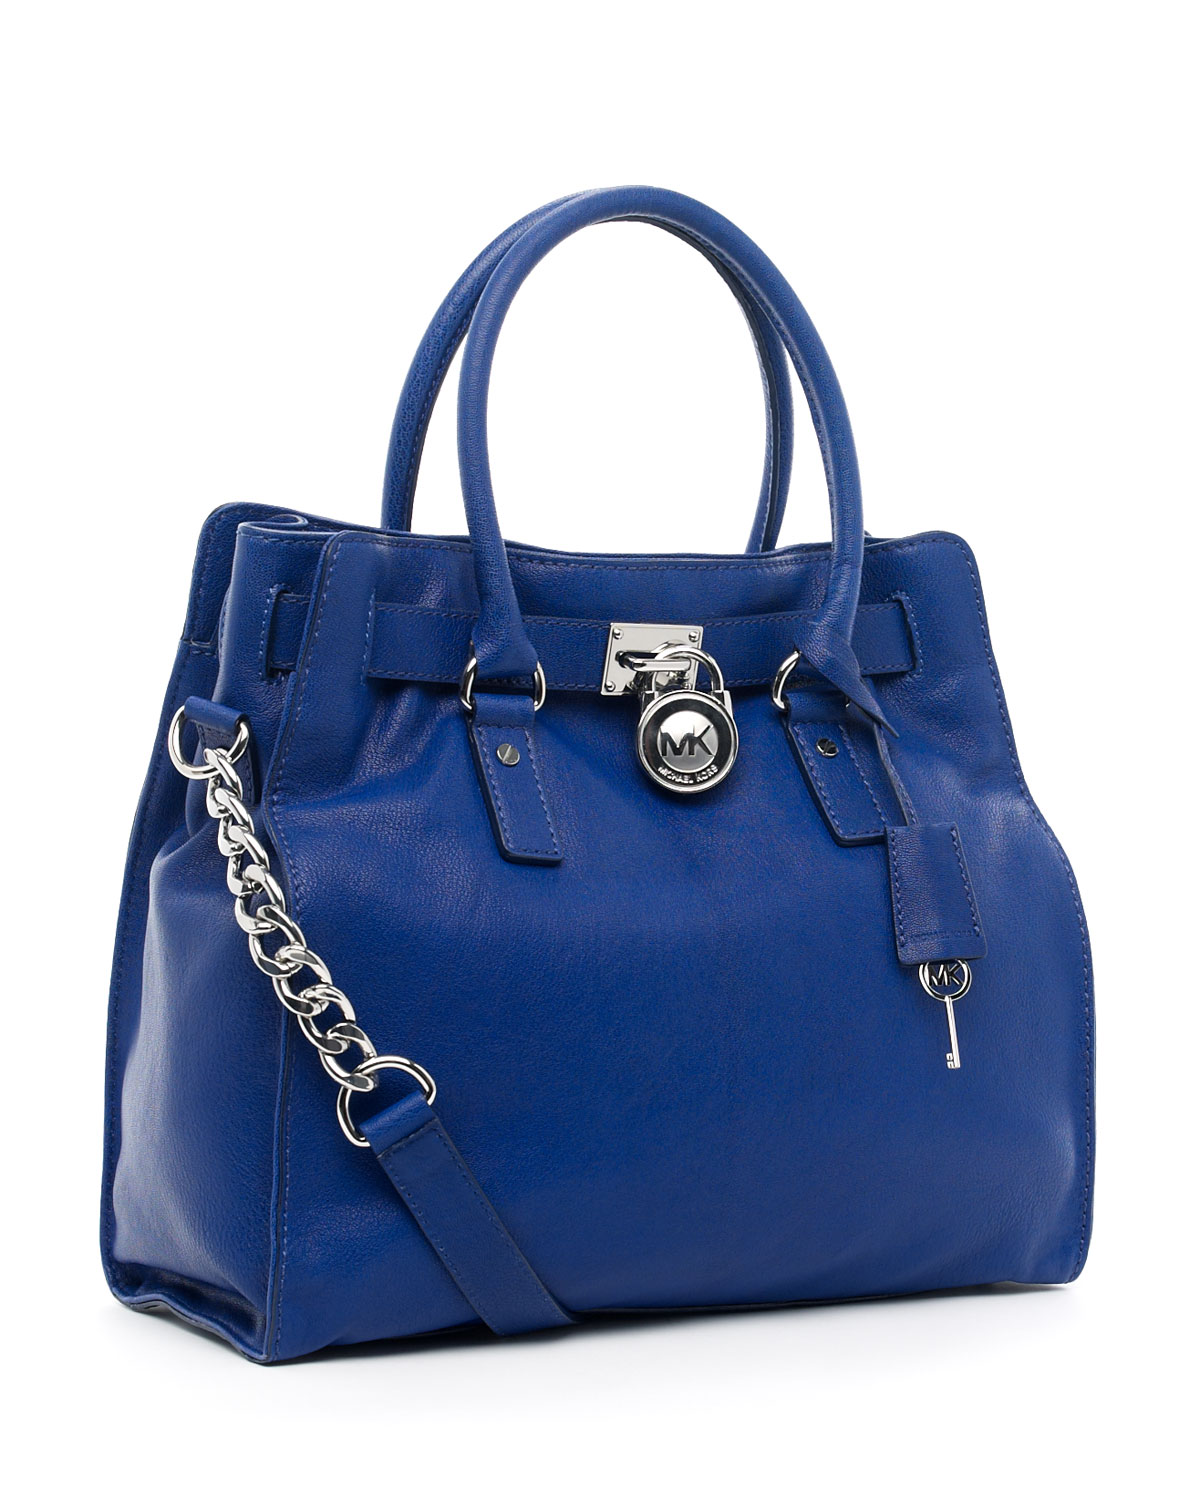 Michael Kors Handbags Blue Color | IQS Executive